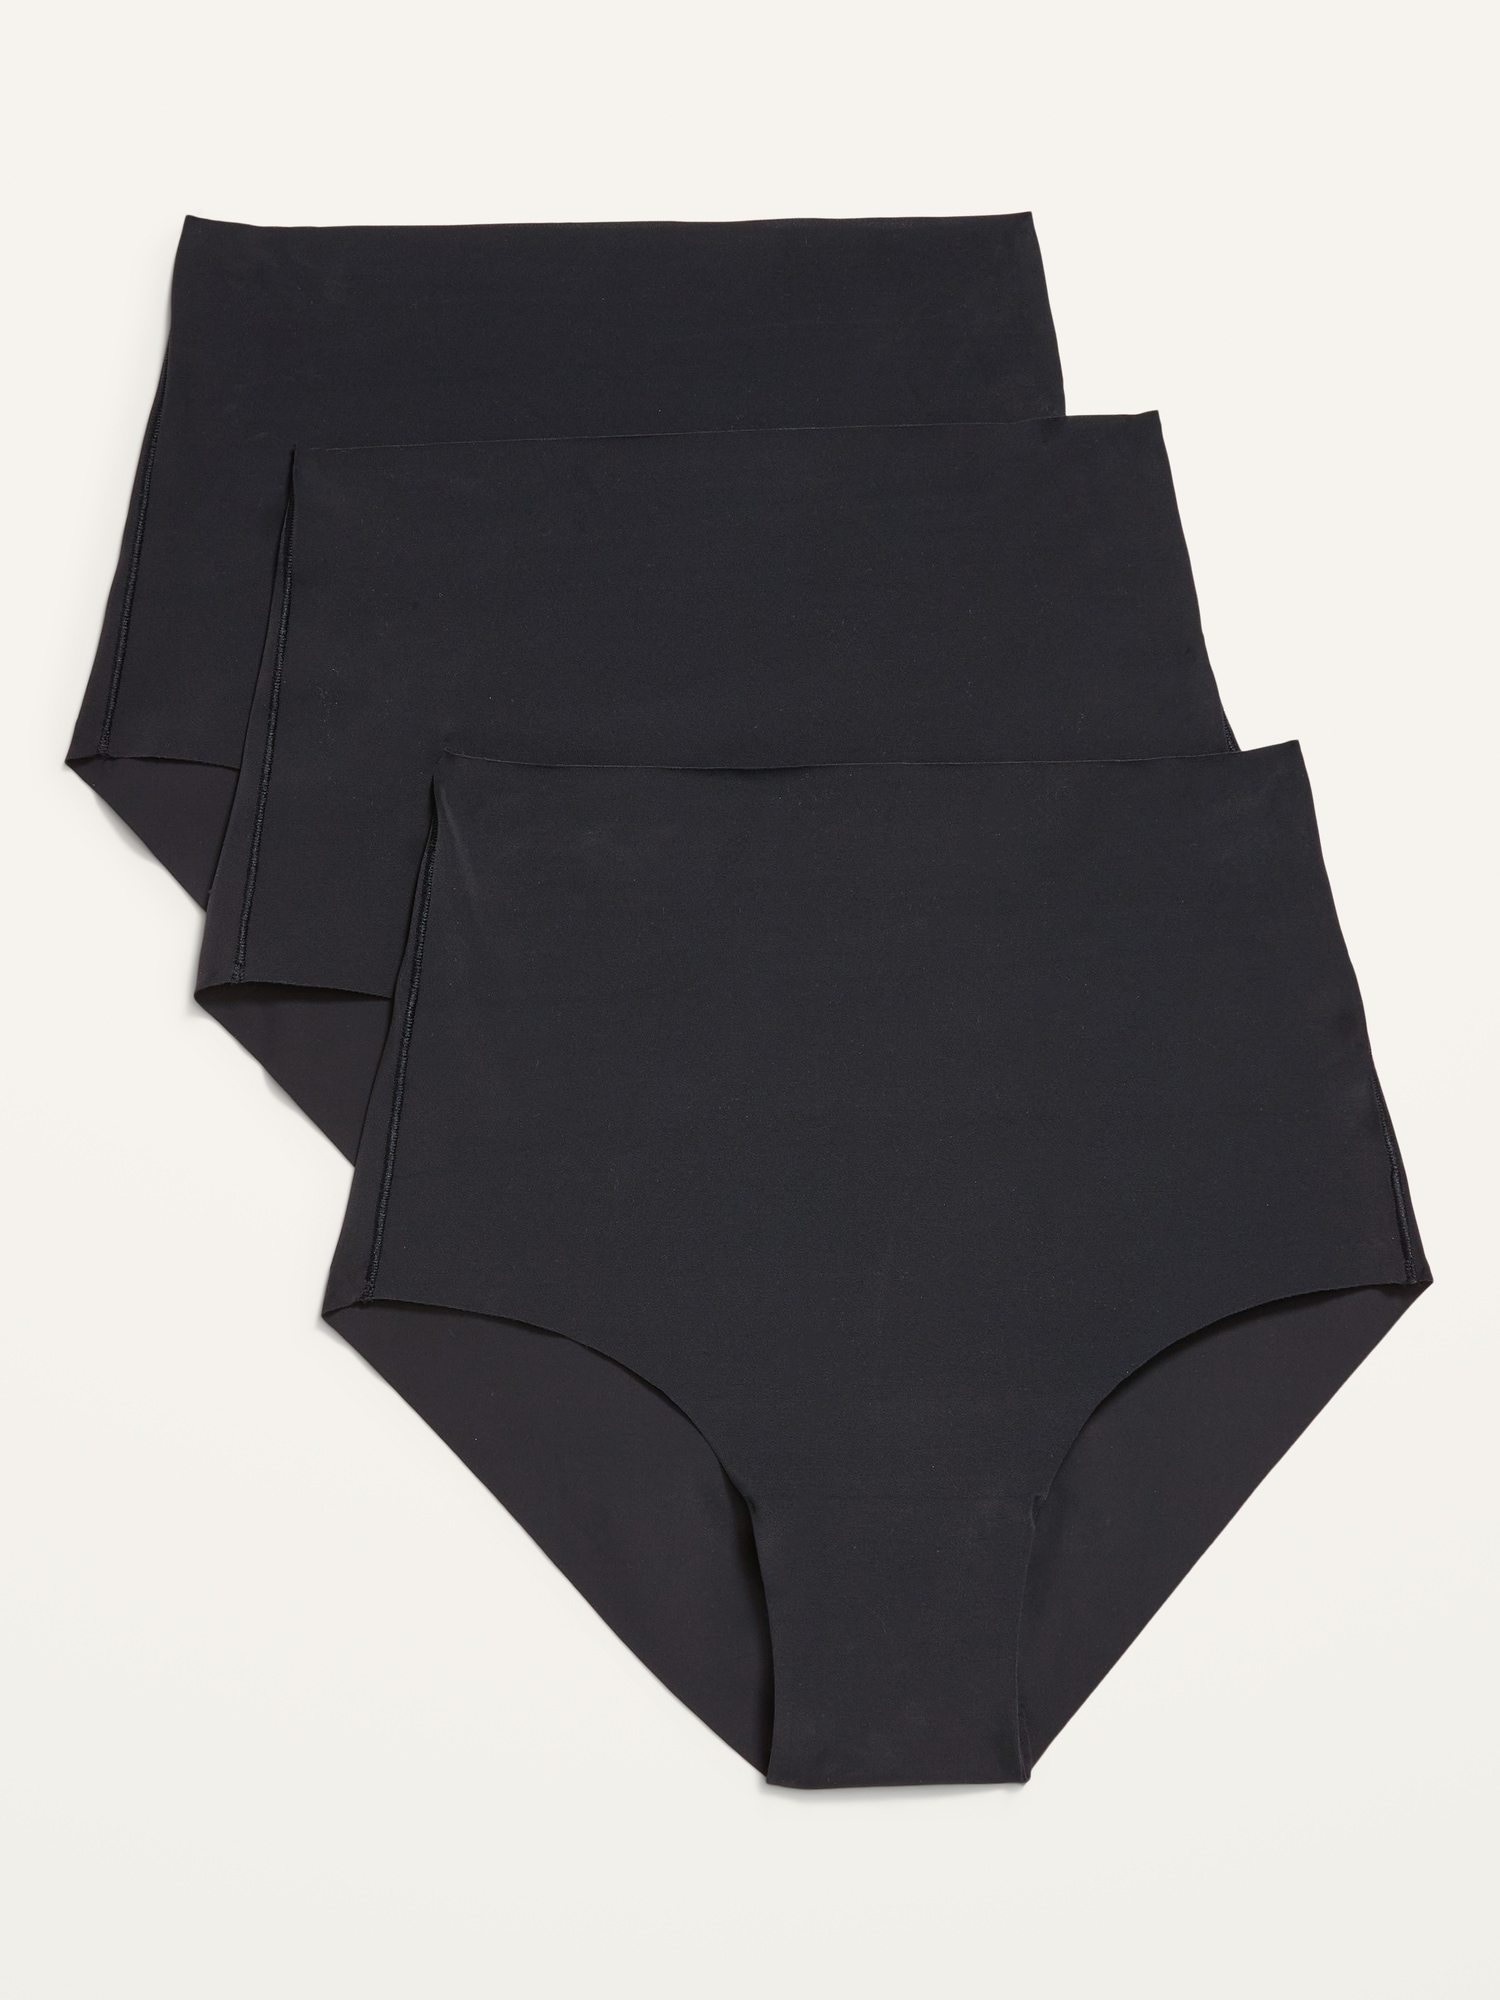 Brief | Women's Underwear | Starting at $9 | Parade